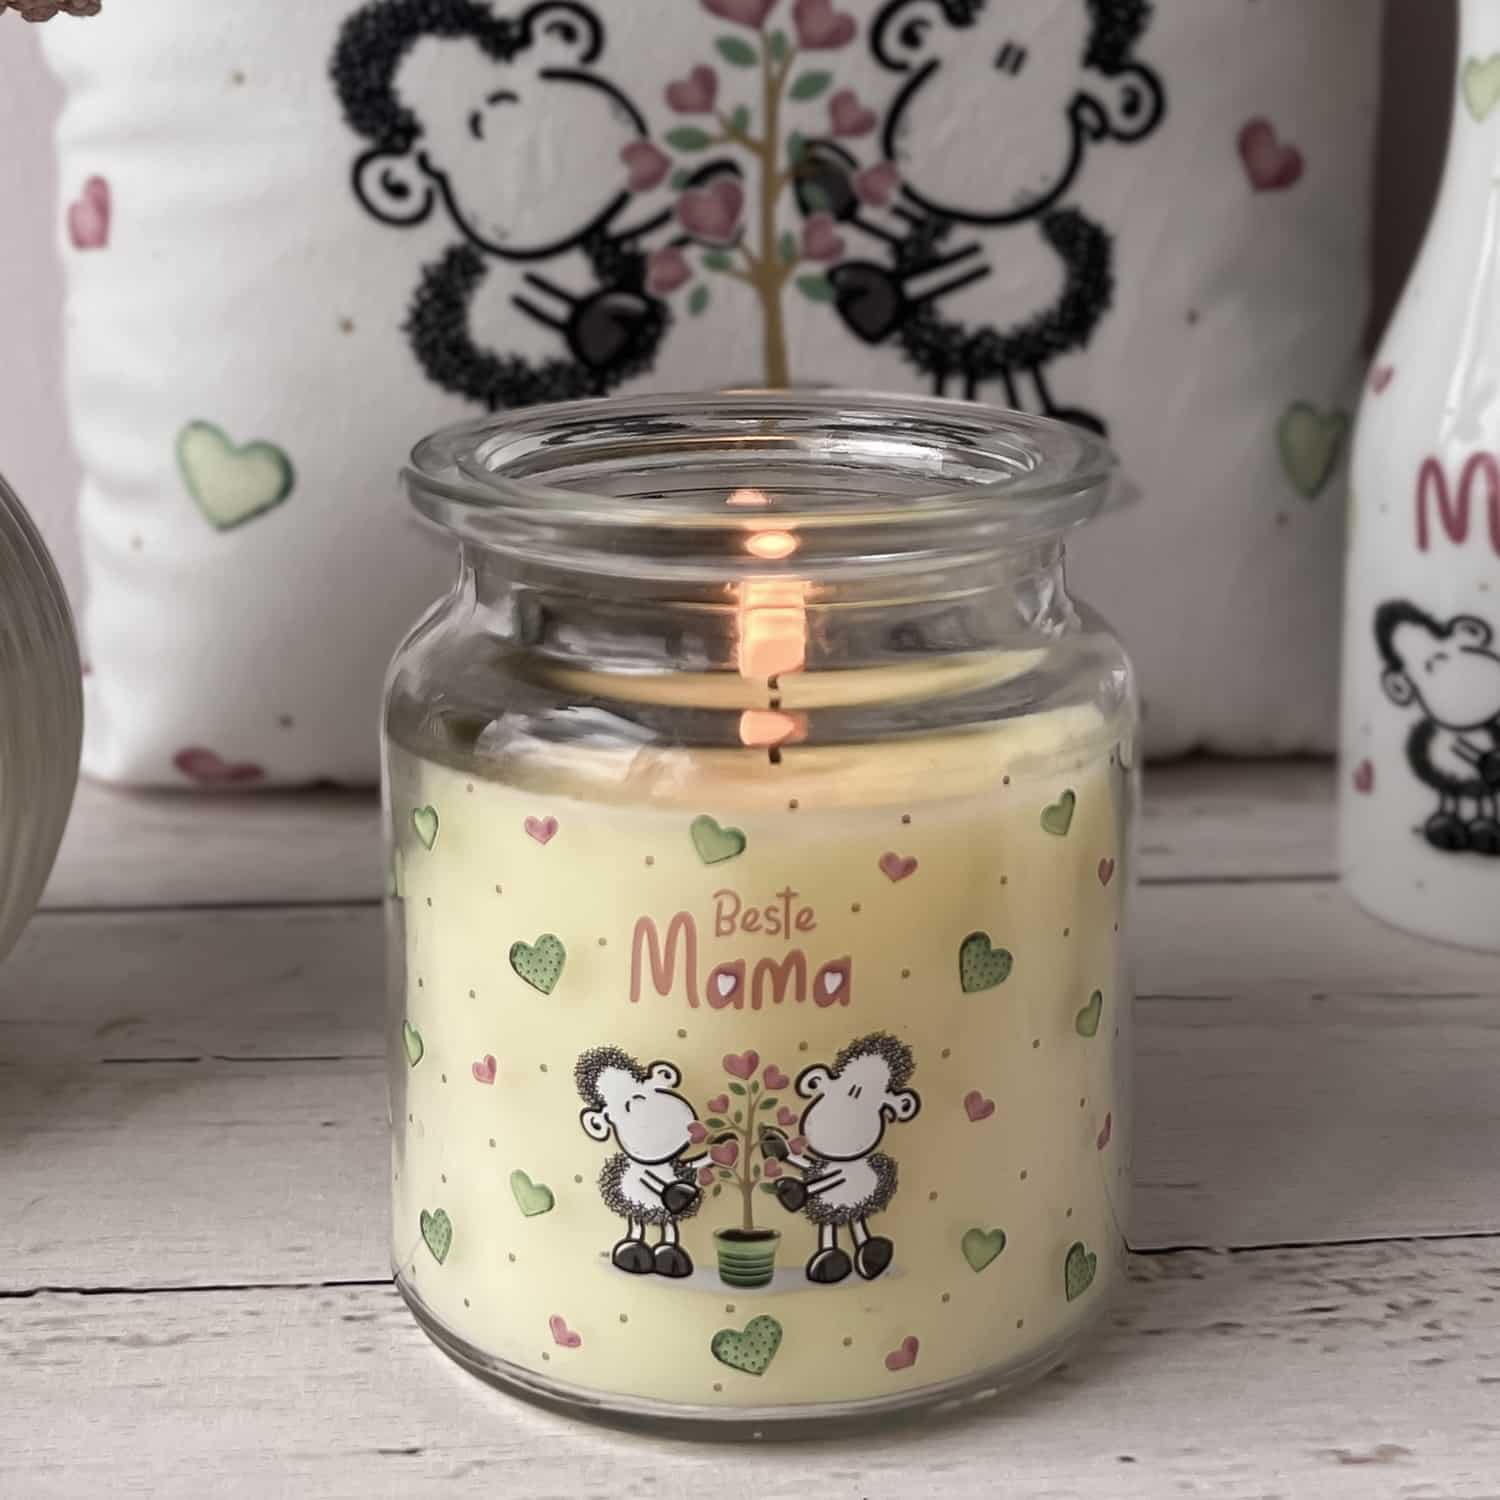 Kerze im Glas mit sheepworld Motiv und dem Spruch "Beste Mama"